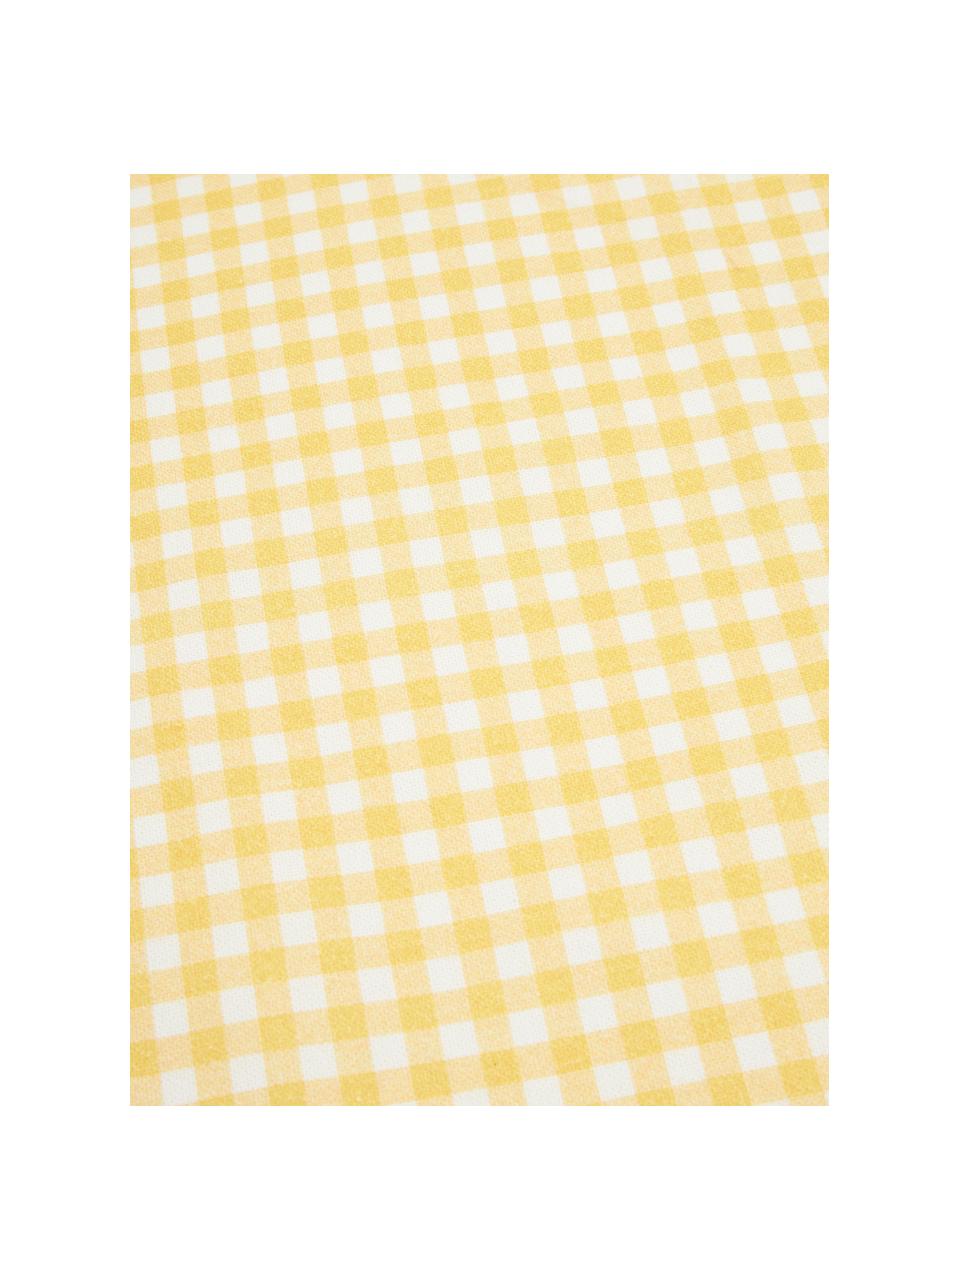 Bieżnik z bawełny Vicky, 100% bawełna, Żółty, biały, S 40 x D 145 cm